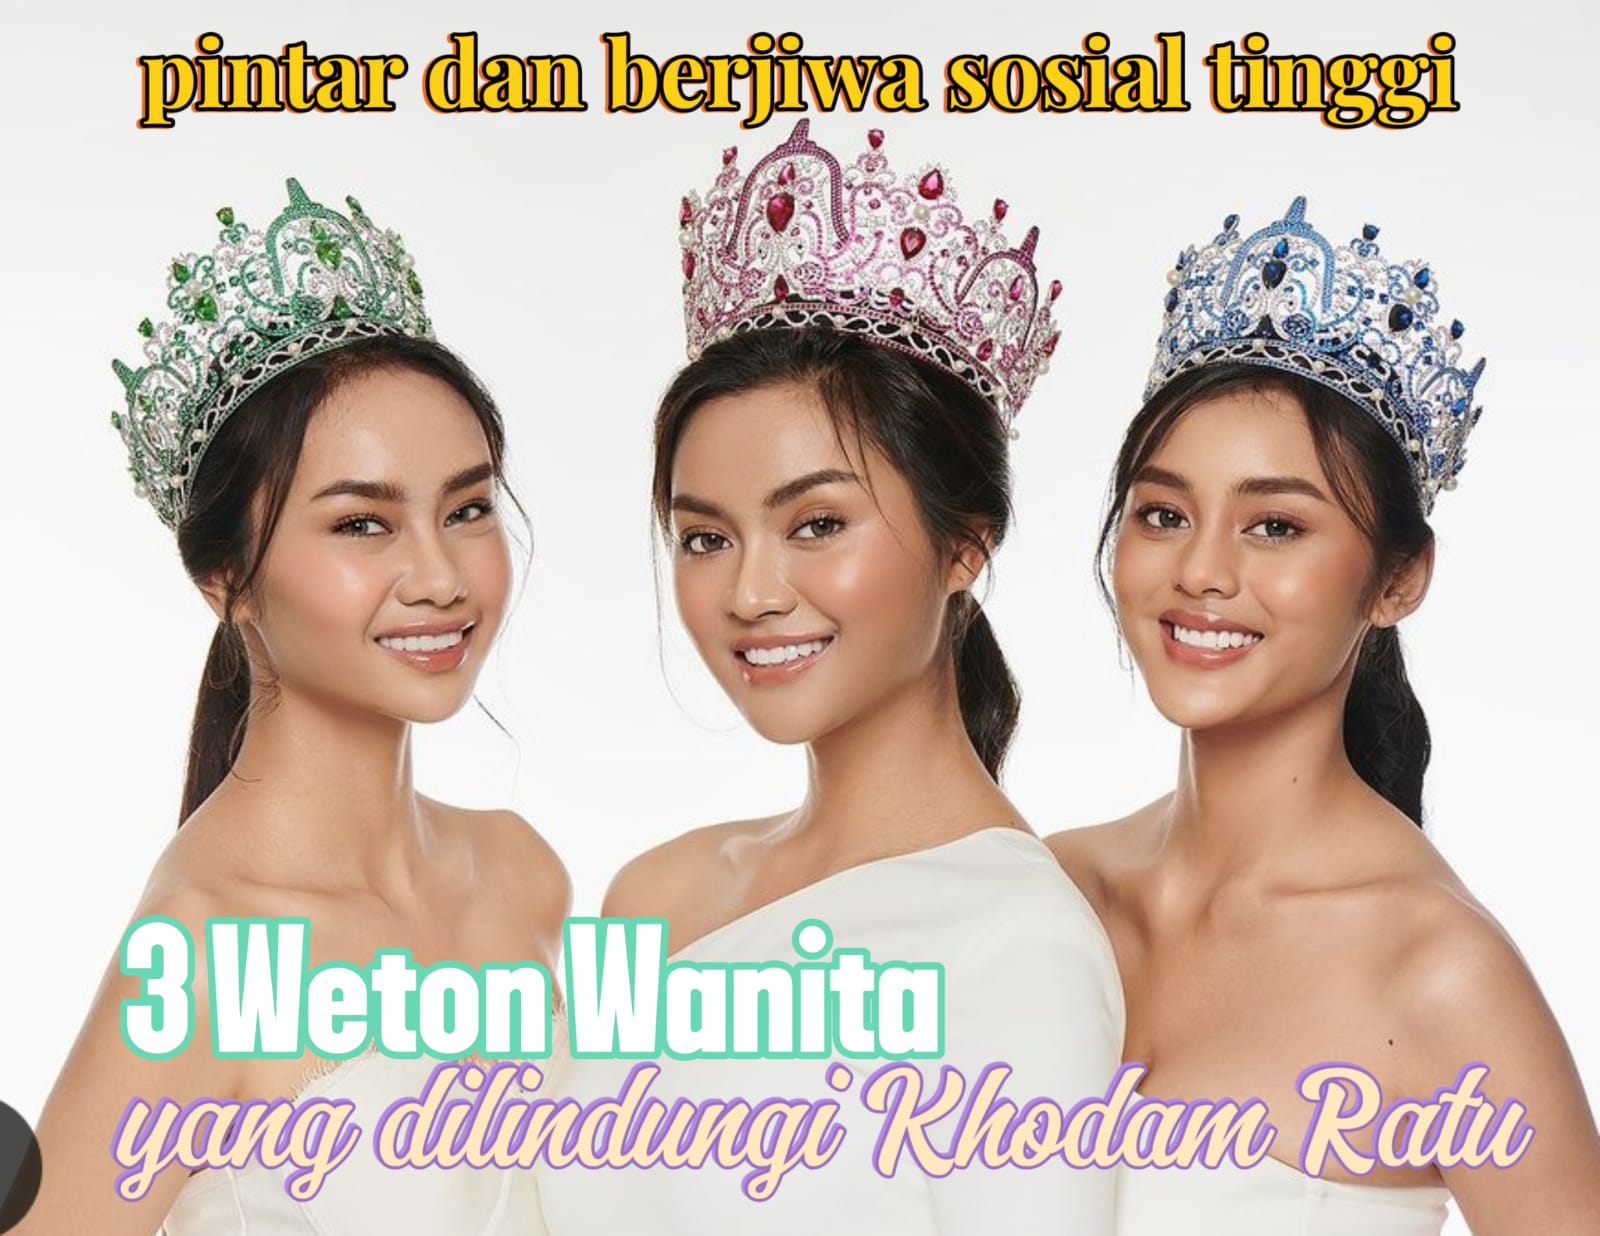 Cerdas dan Punya Jiwa Sosial Tinggi, 3 Weton Wanita yang Dapat Naungan Khodam Ratu Menurut Primbon Jawa